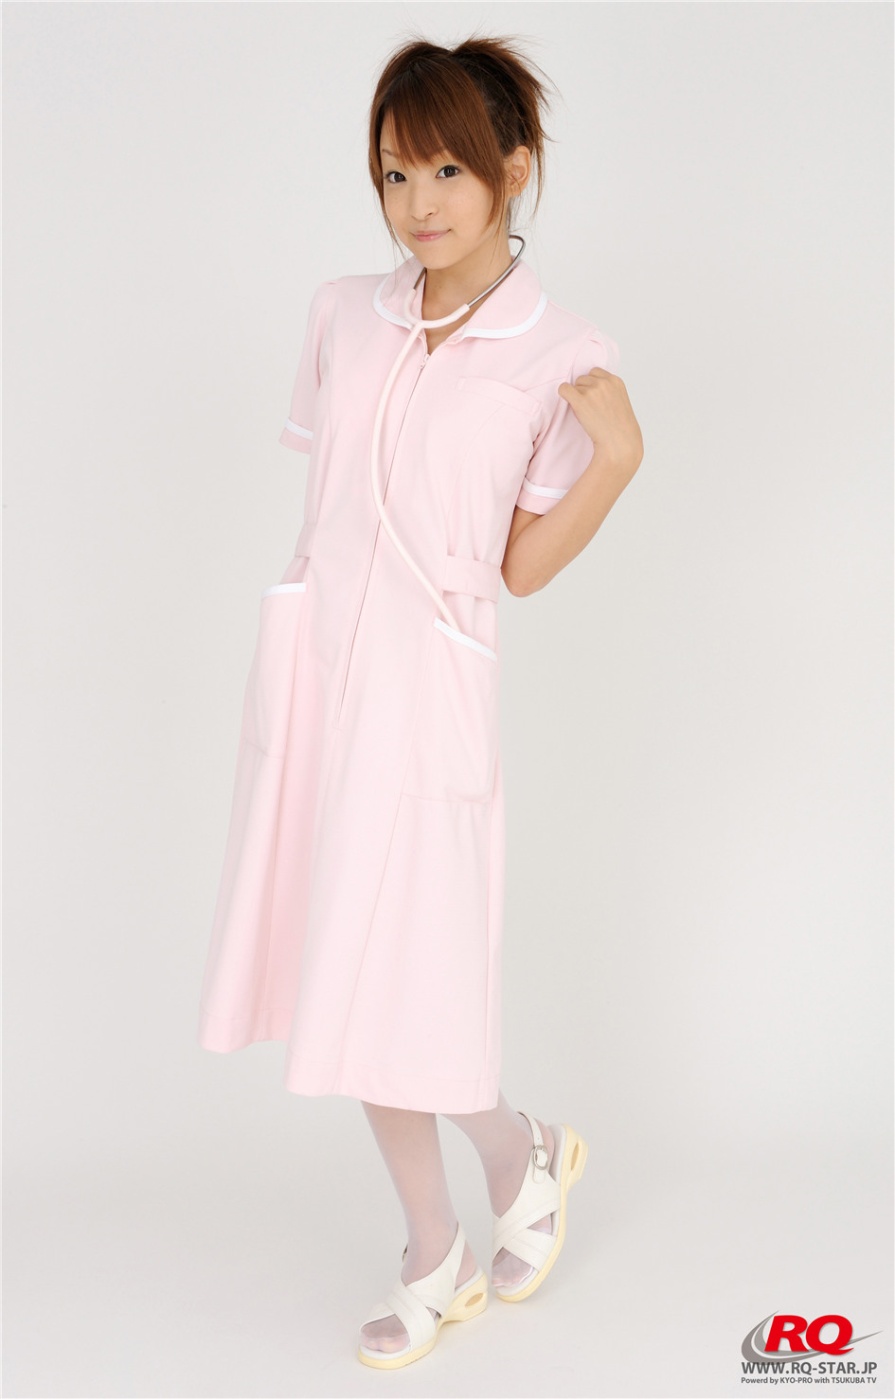 日本美女青木未央粉色护士装写真(第6页)